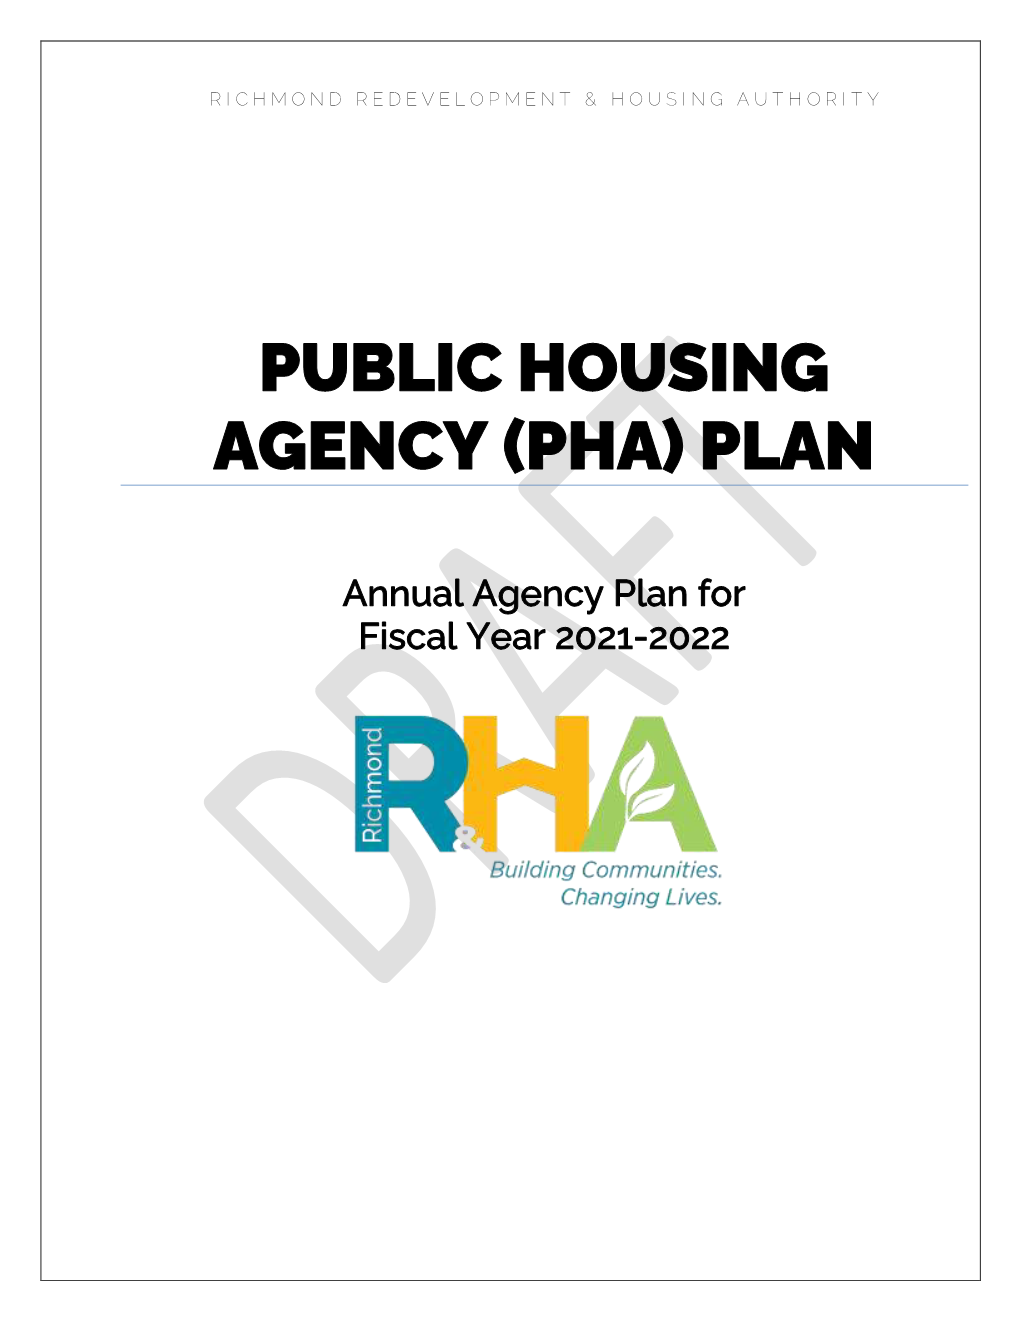 Public Housing Agency